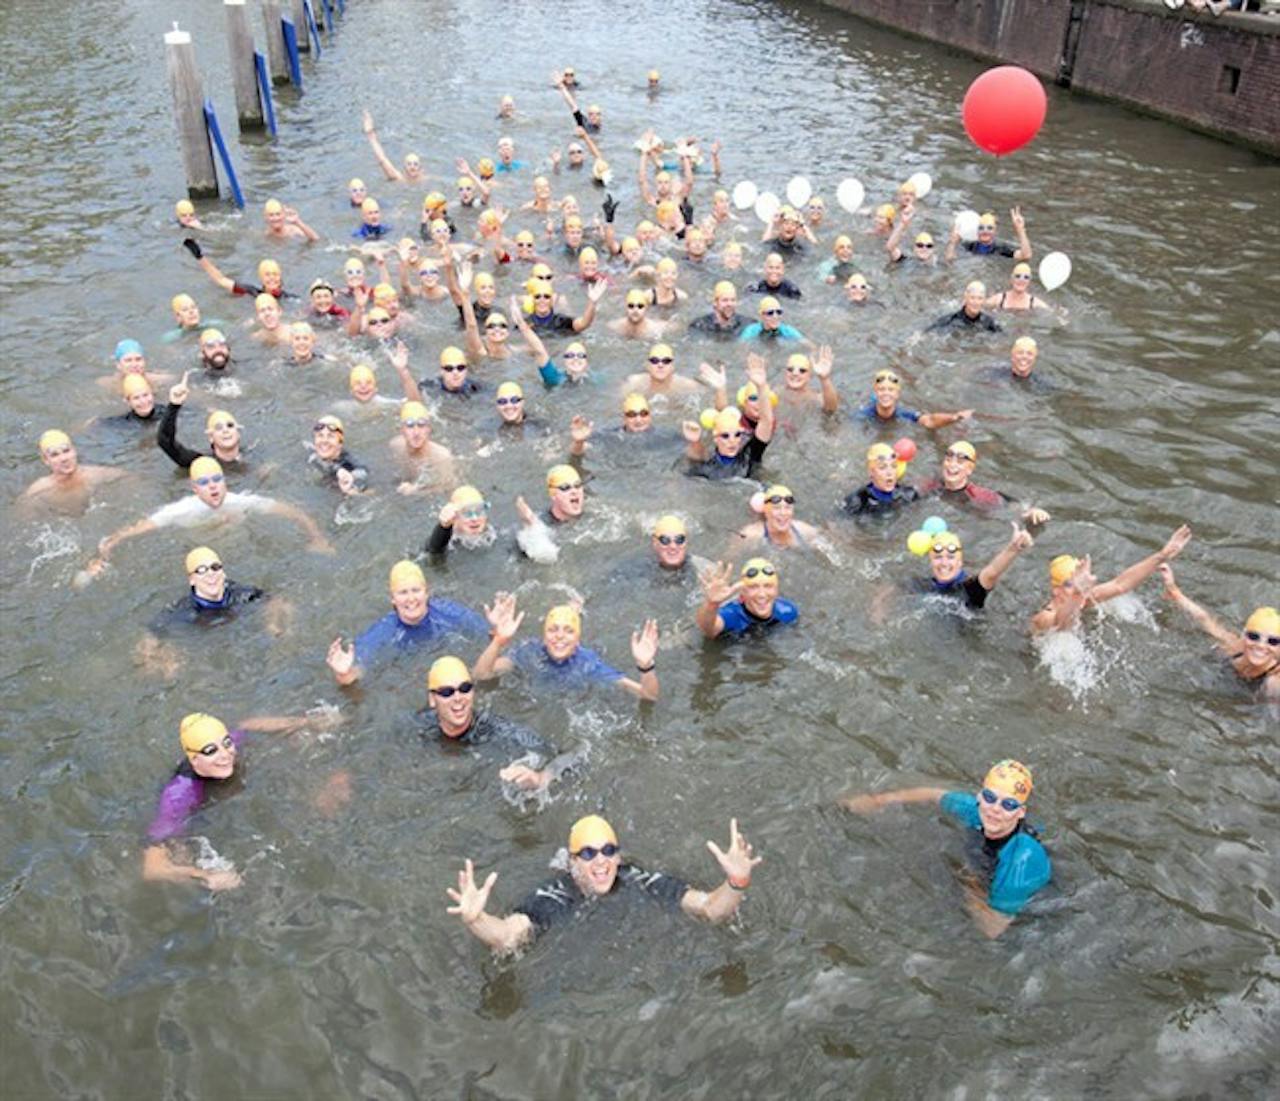 Een groep mensen die zwemmen in een gracht. Op de achtergrond is een rode ballon te zien.